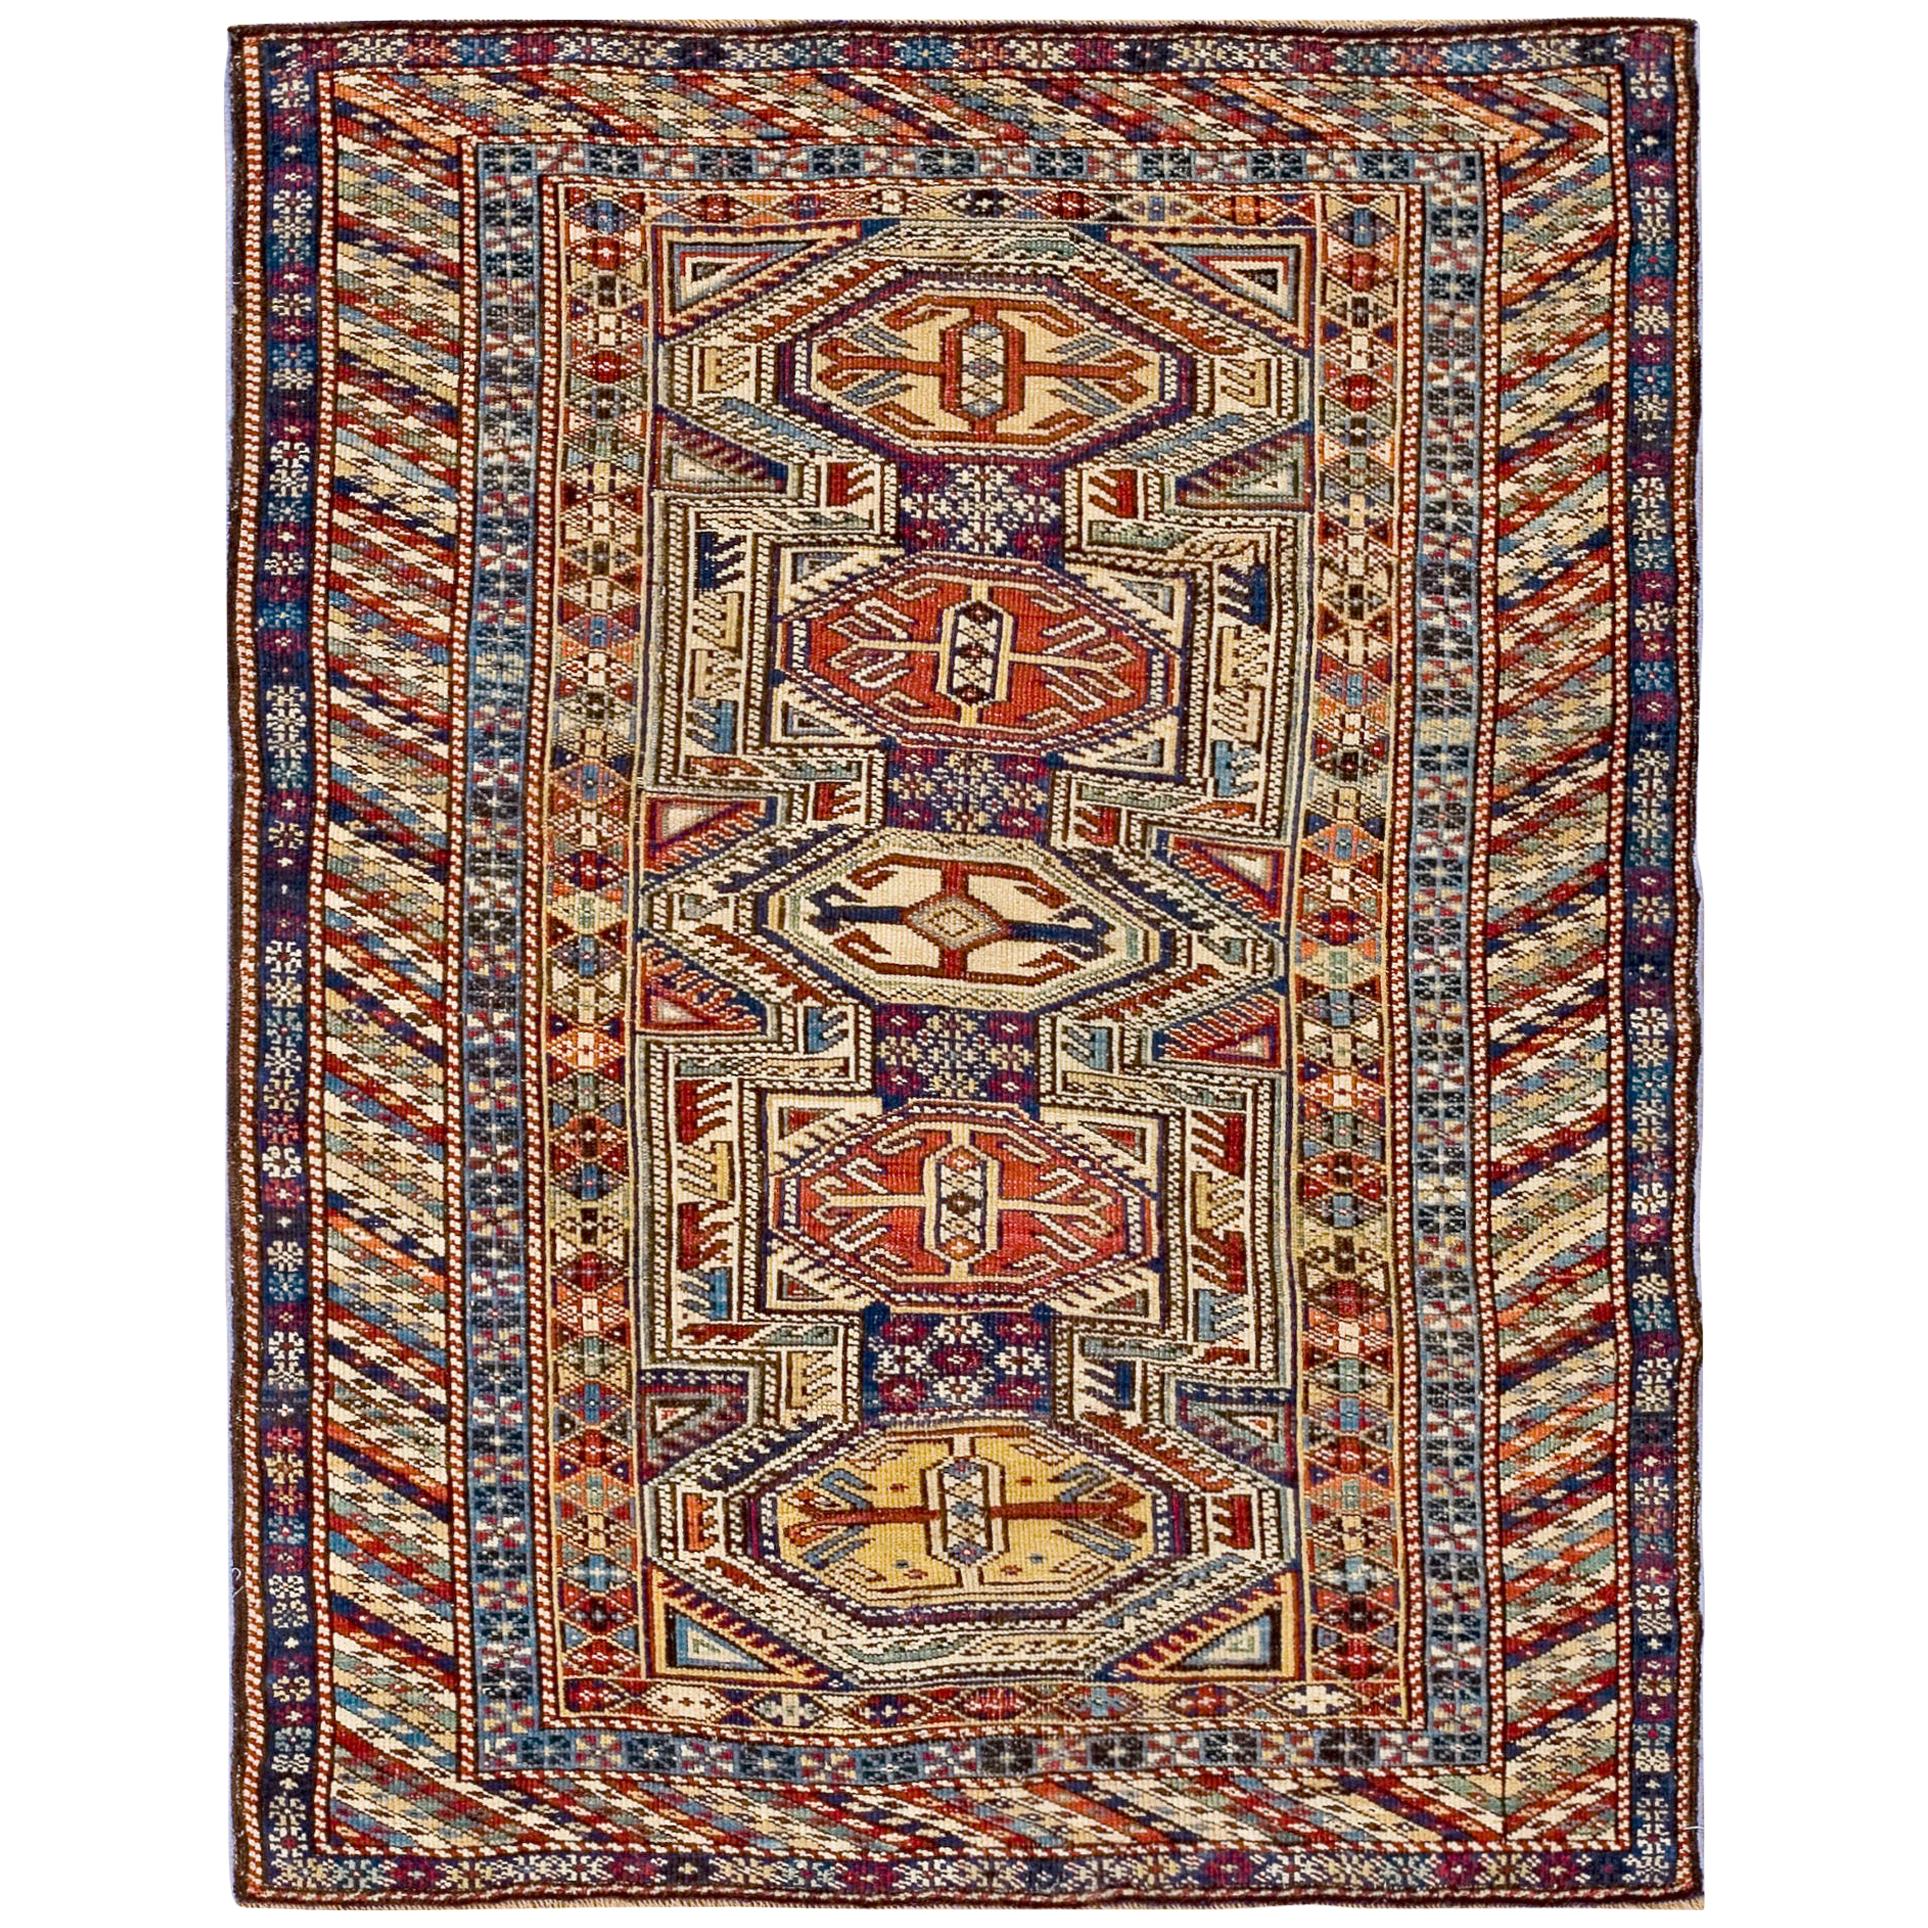 Late 19th Century Caucasian Shirvan Carpet ( 3'5" x 4'5"- 104 x 134 cm )